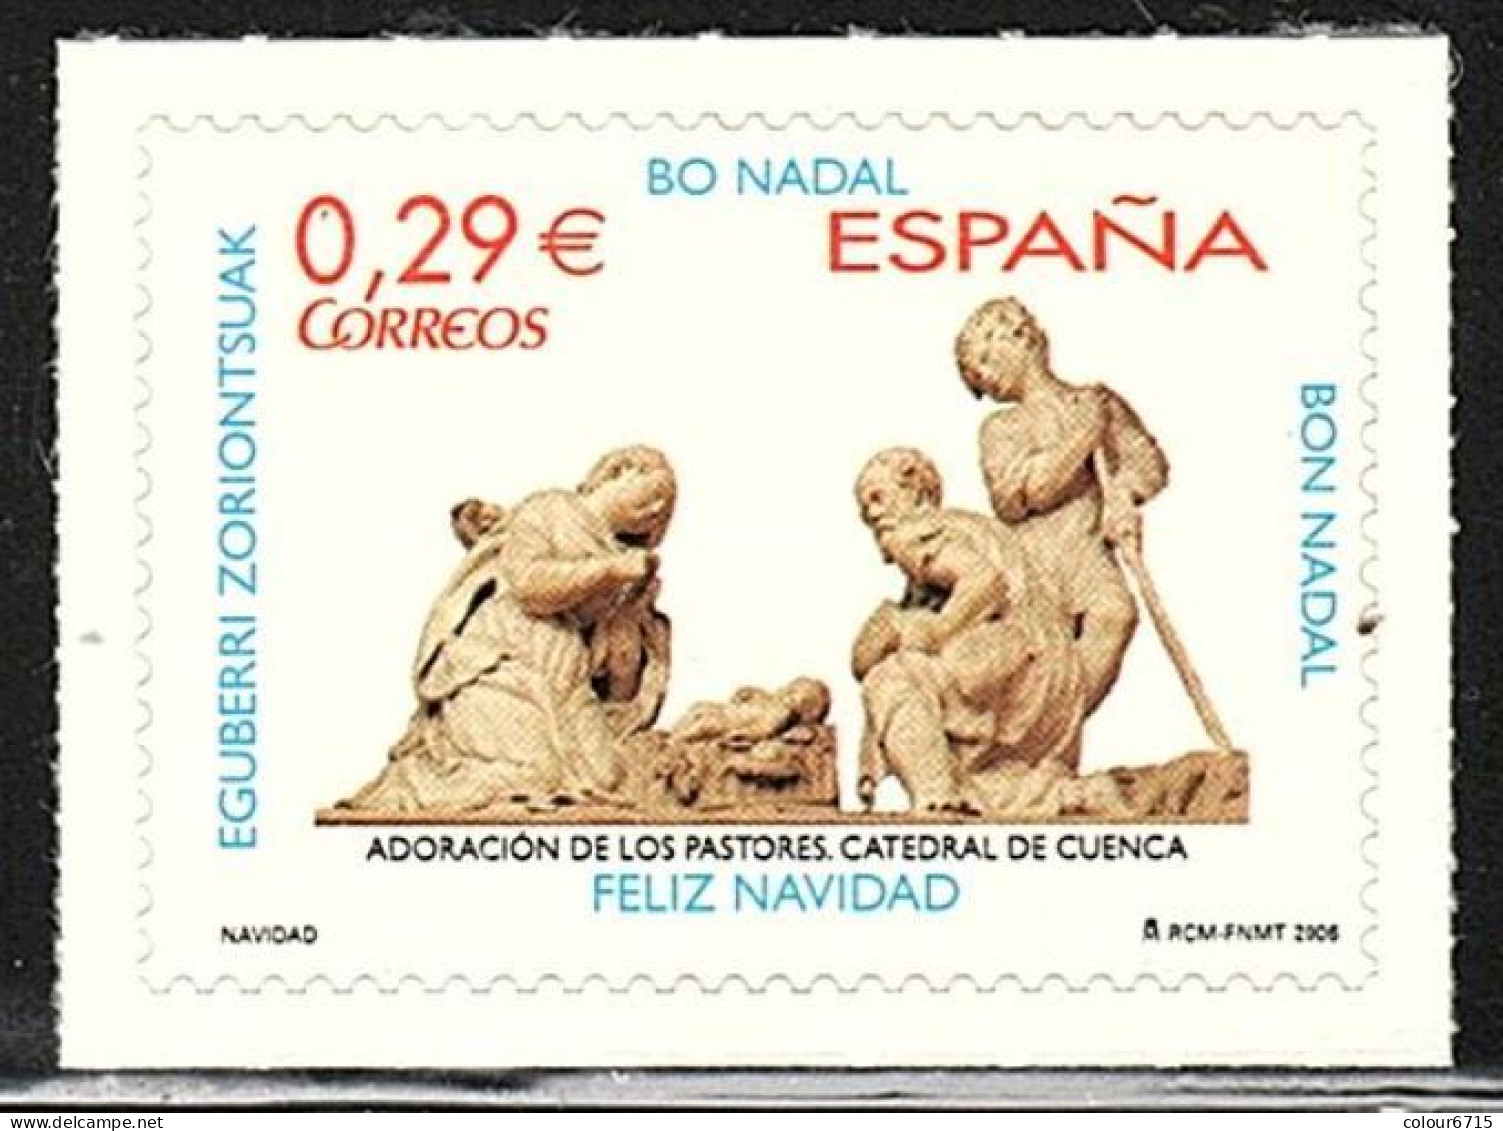 Spain 2006 Navidad Christmas Adoracion De Los Pastores Catedral De Cuenca Stamp 1v MNH - Ongebruikt